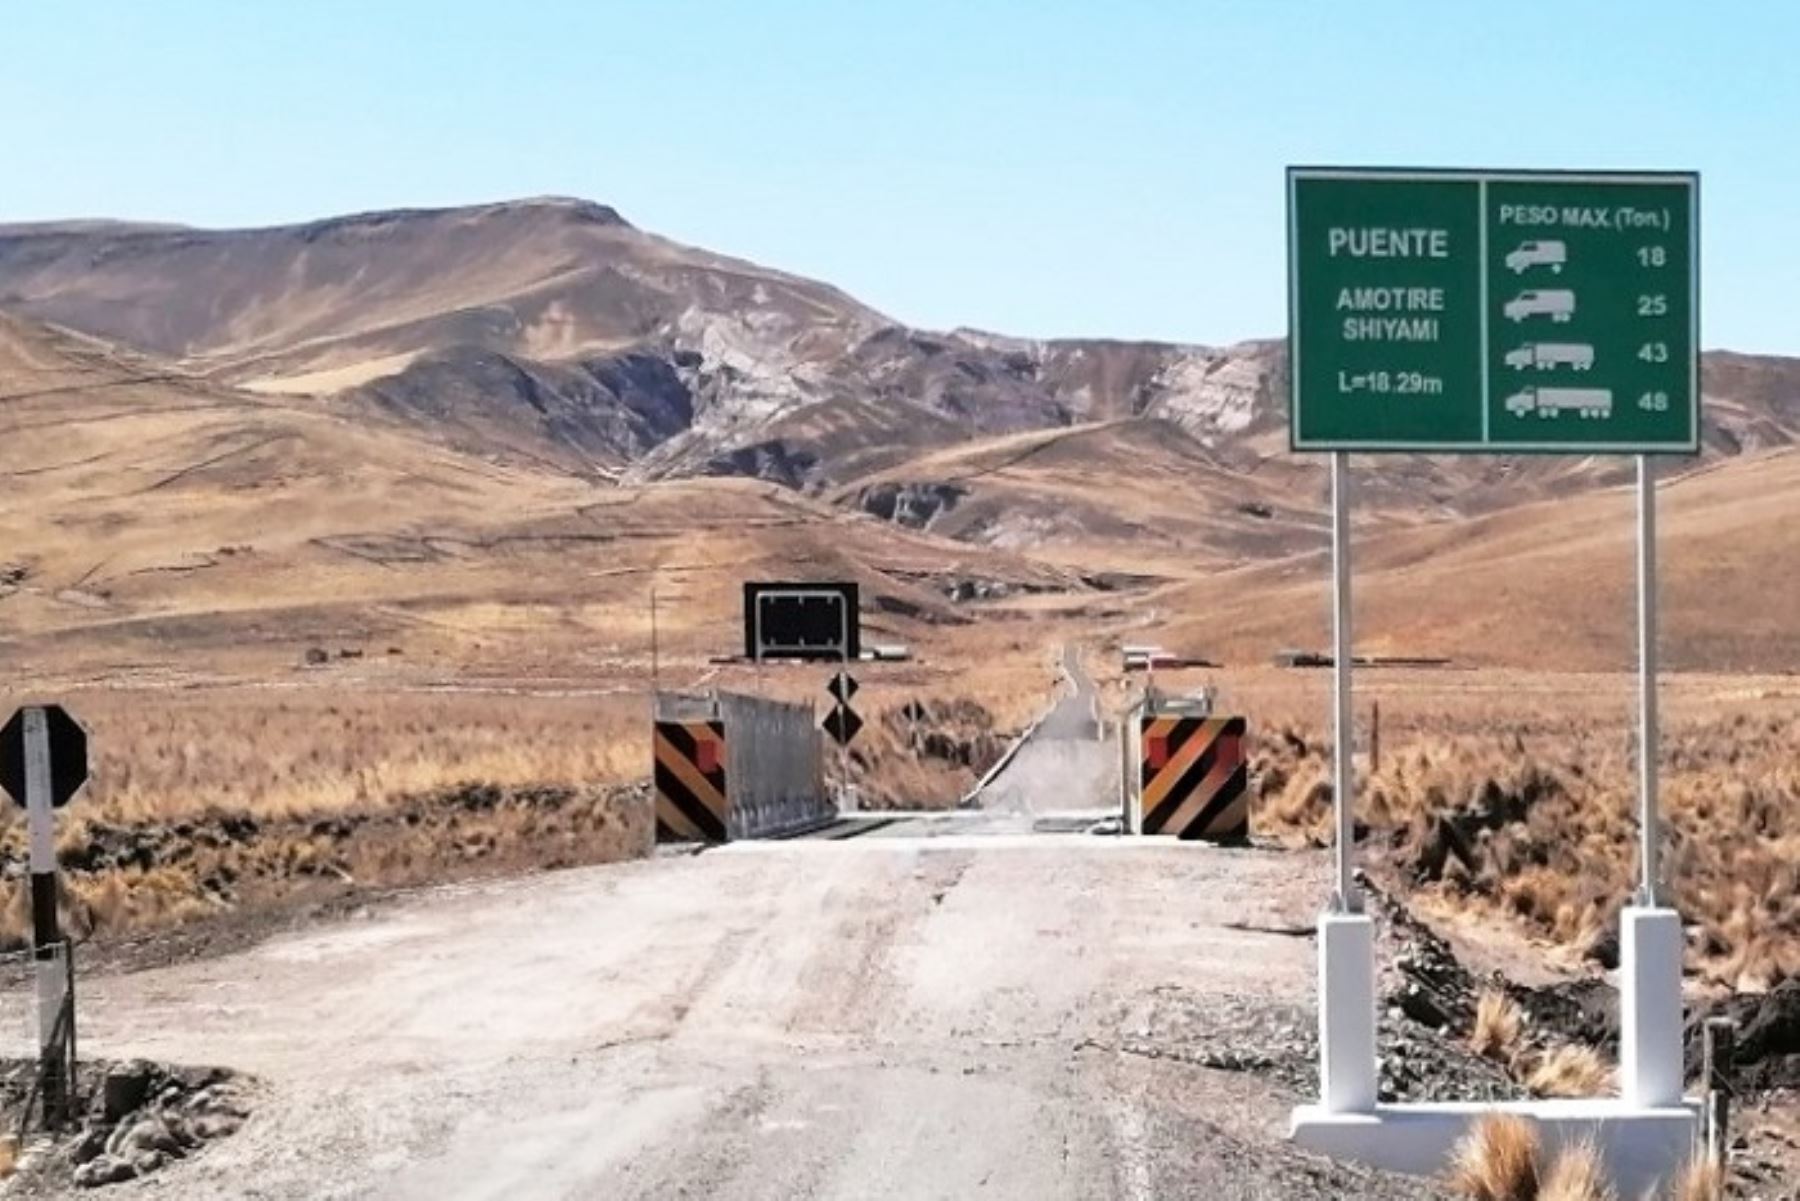 Las longitudes de los111 puentes que se ubican en el distrito Pisacoma, provincia de Chucuito, fluctúan entre los 9 y 30 metros.